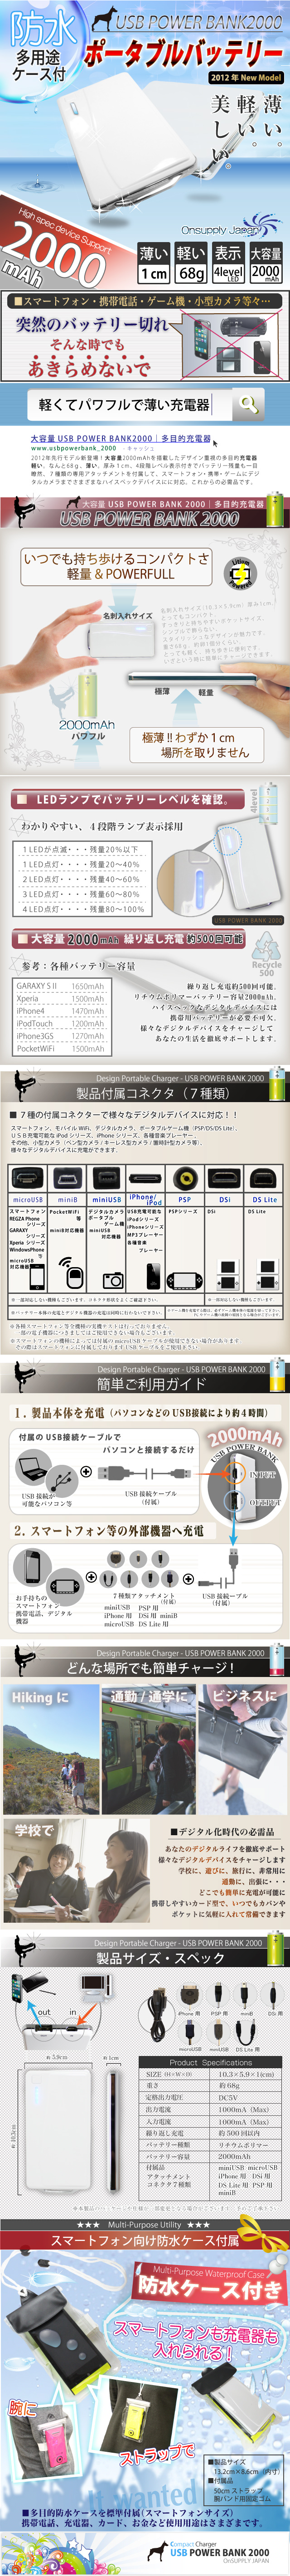 【充電器】スマートフォン(iPhone4S対応)モバイルデバイス用バッテリーPowerBank2000＆防水ケースセット